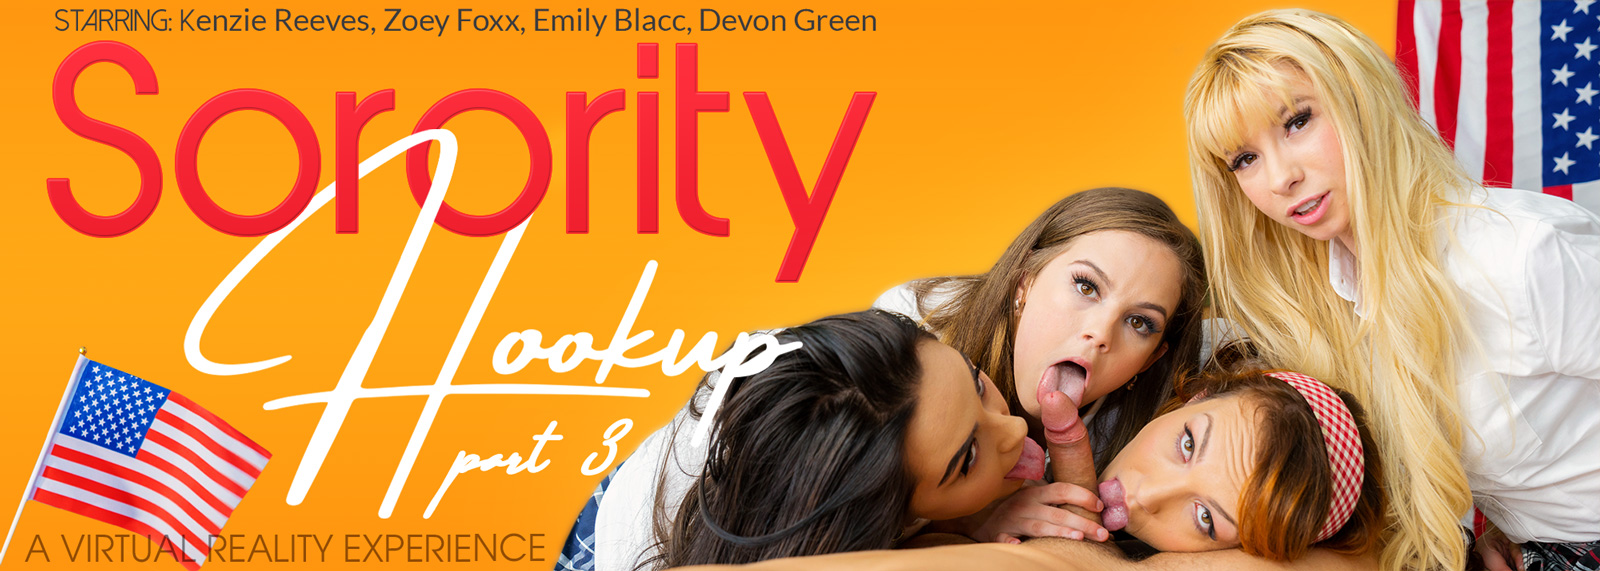 Sorority Hookup Part 3 with Emily Blacc  Slideshow